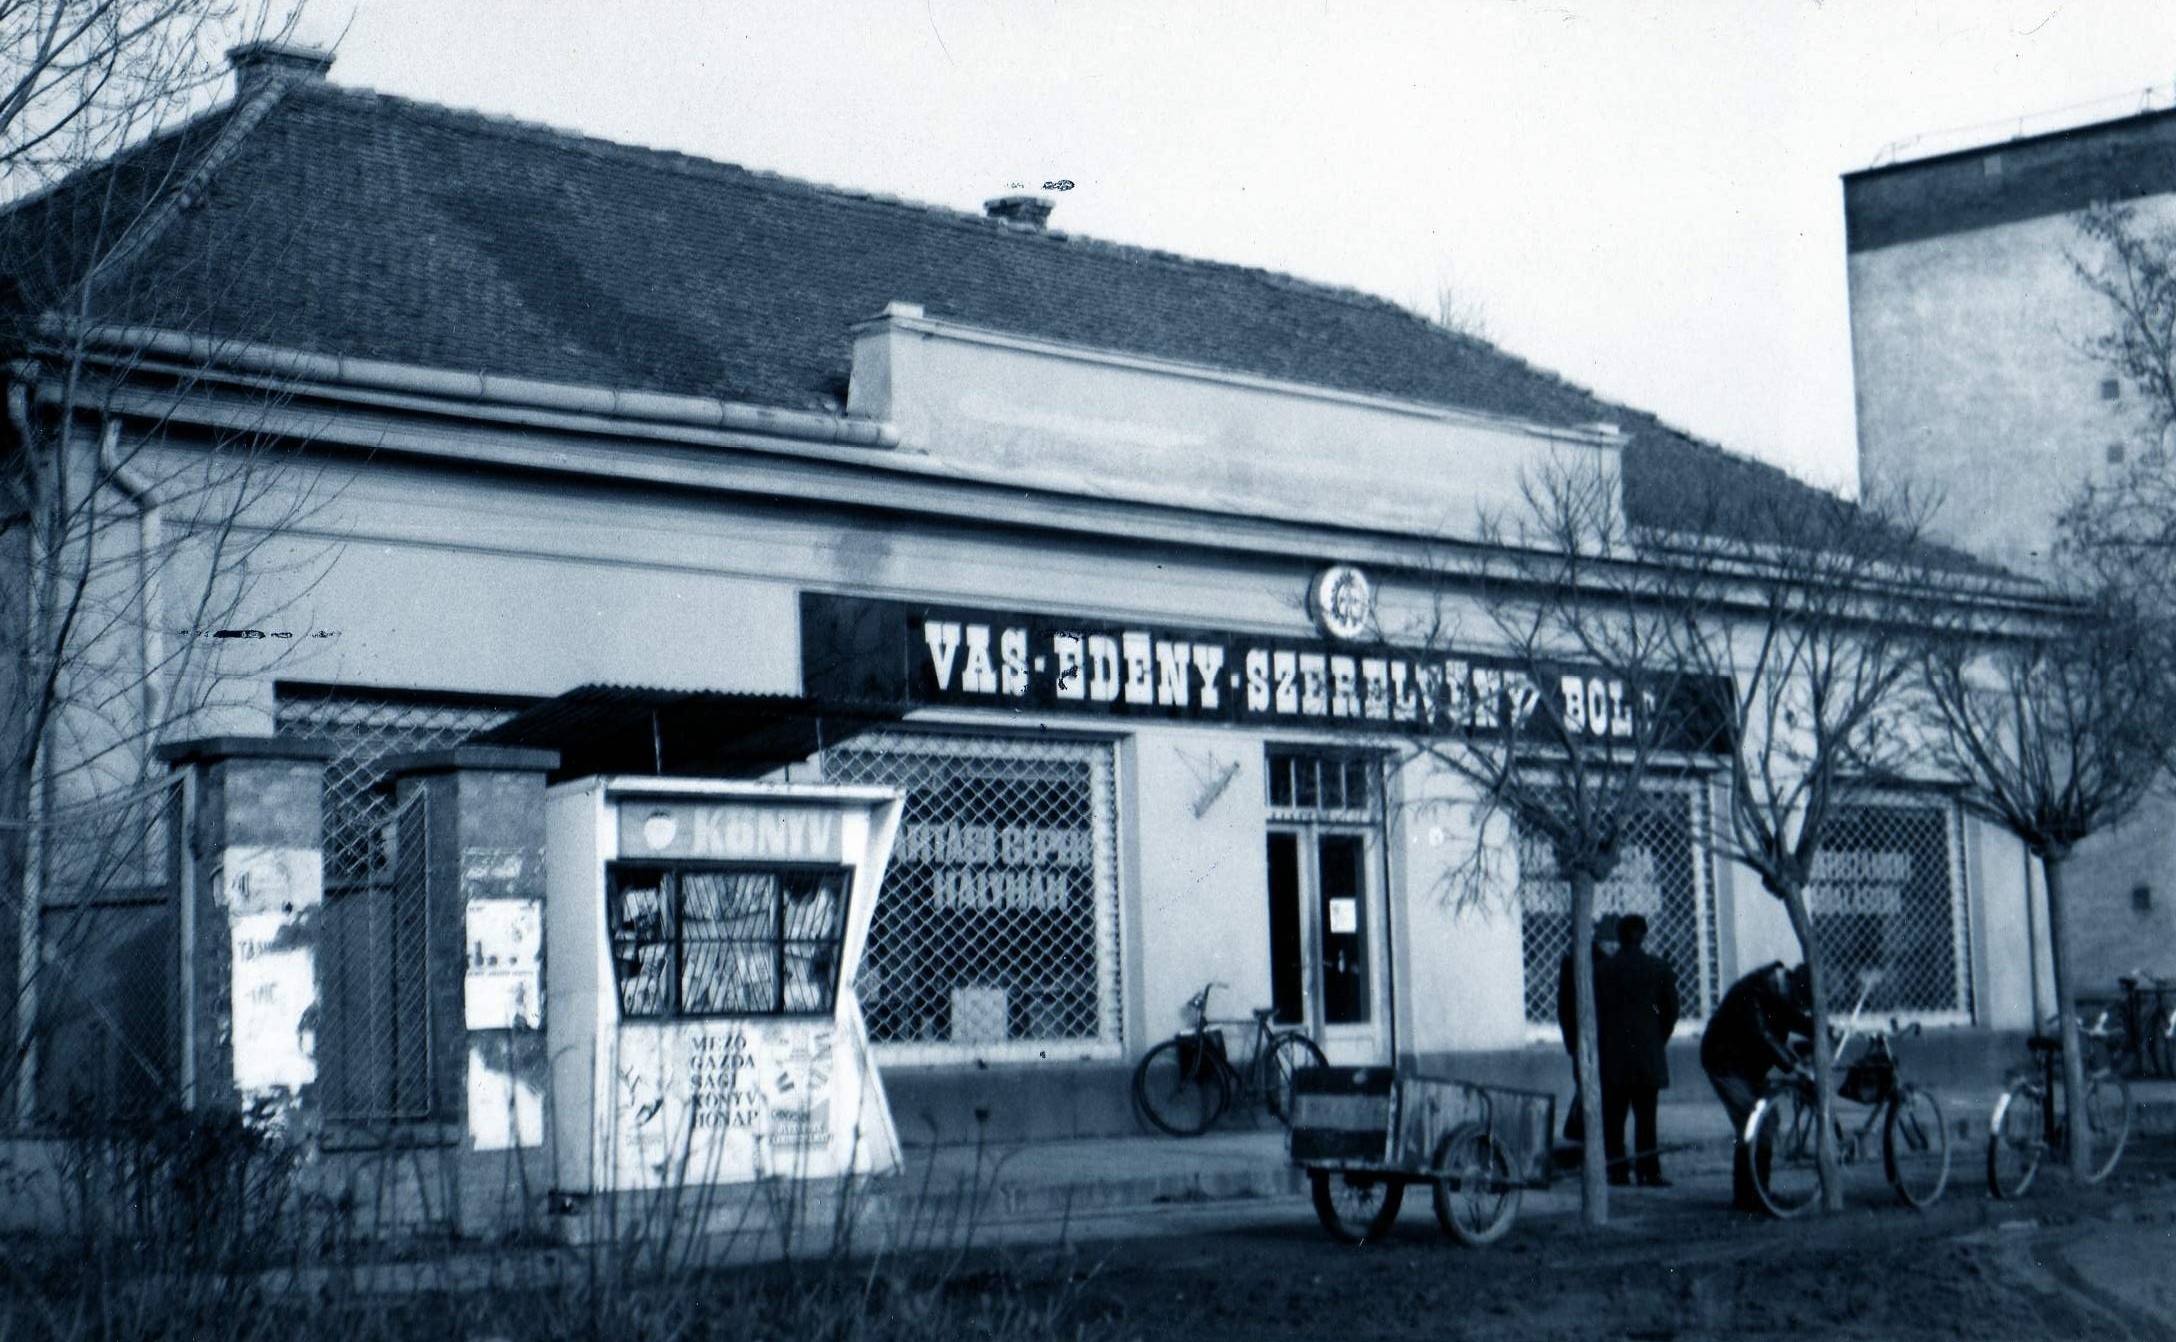 Vasedény-Szerelvénybolt (Karacs Ferenc Múzeum, Püspökladány CC BY-NC-SA)